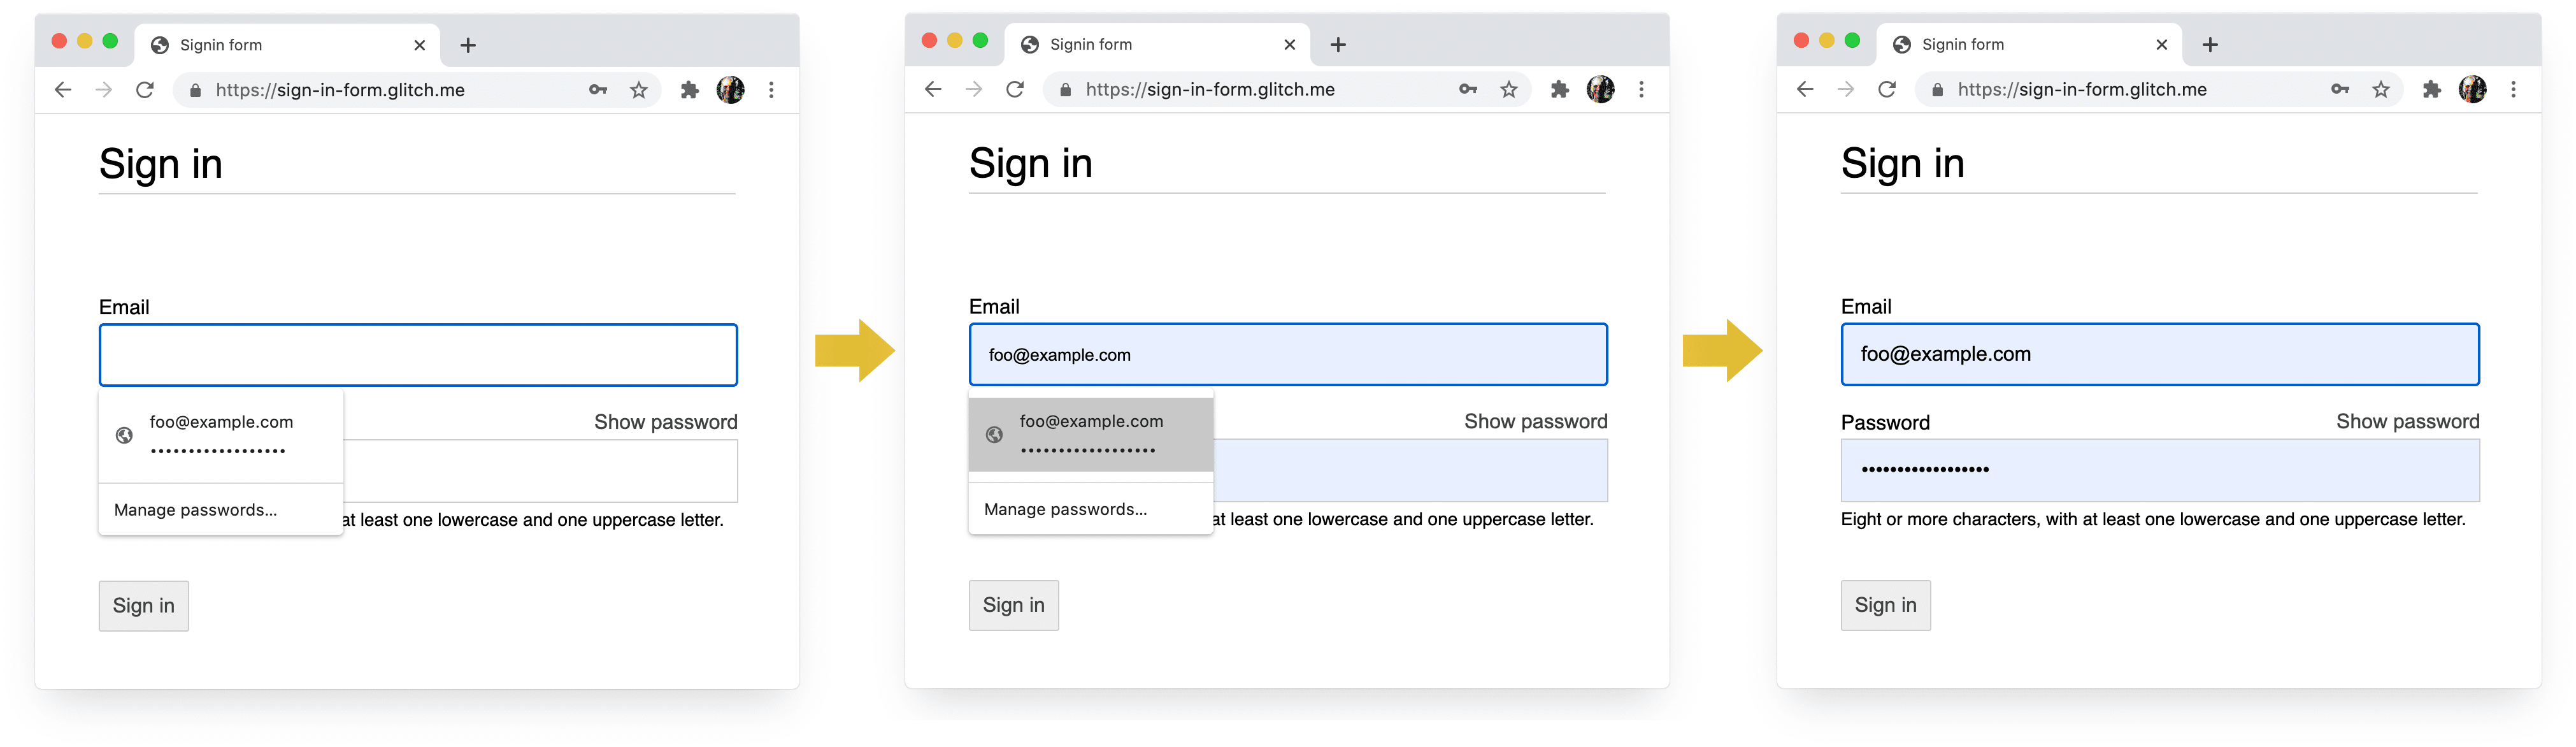 Ảnh chụp màn hình 4 giai đoạn của quá trình đăng nhập vào Chrome trên máy tính: hoàn tất email, đề xuất email, trình quản lý mật khẩu, tự động điền khi chọn.